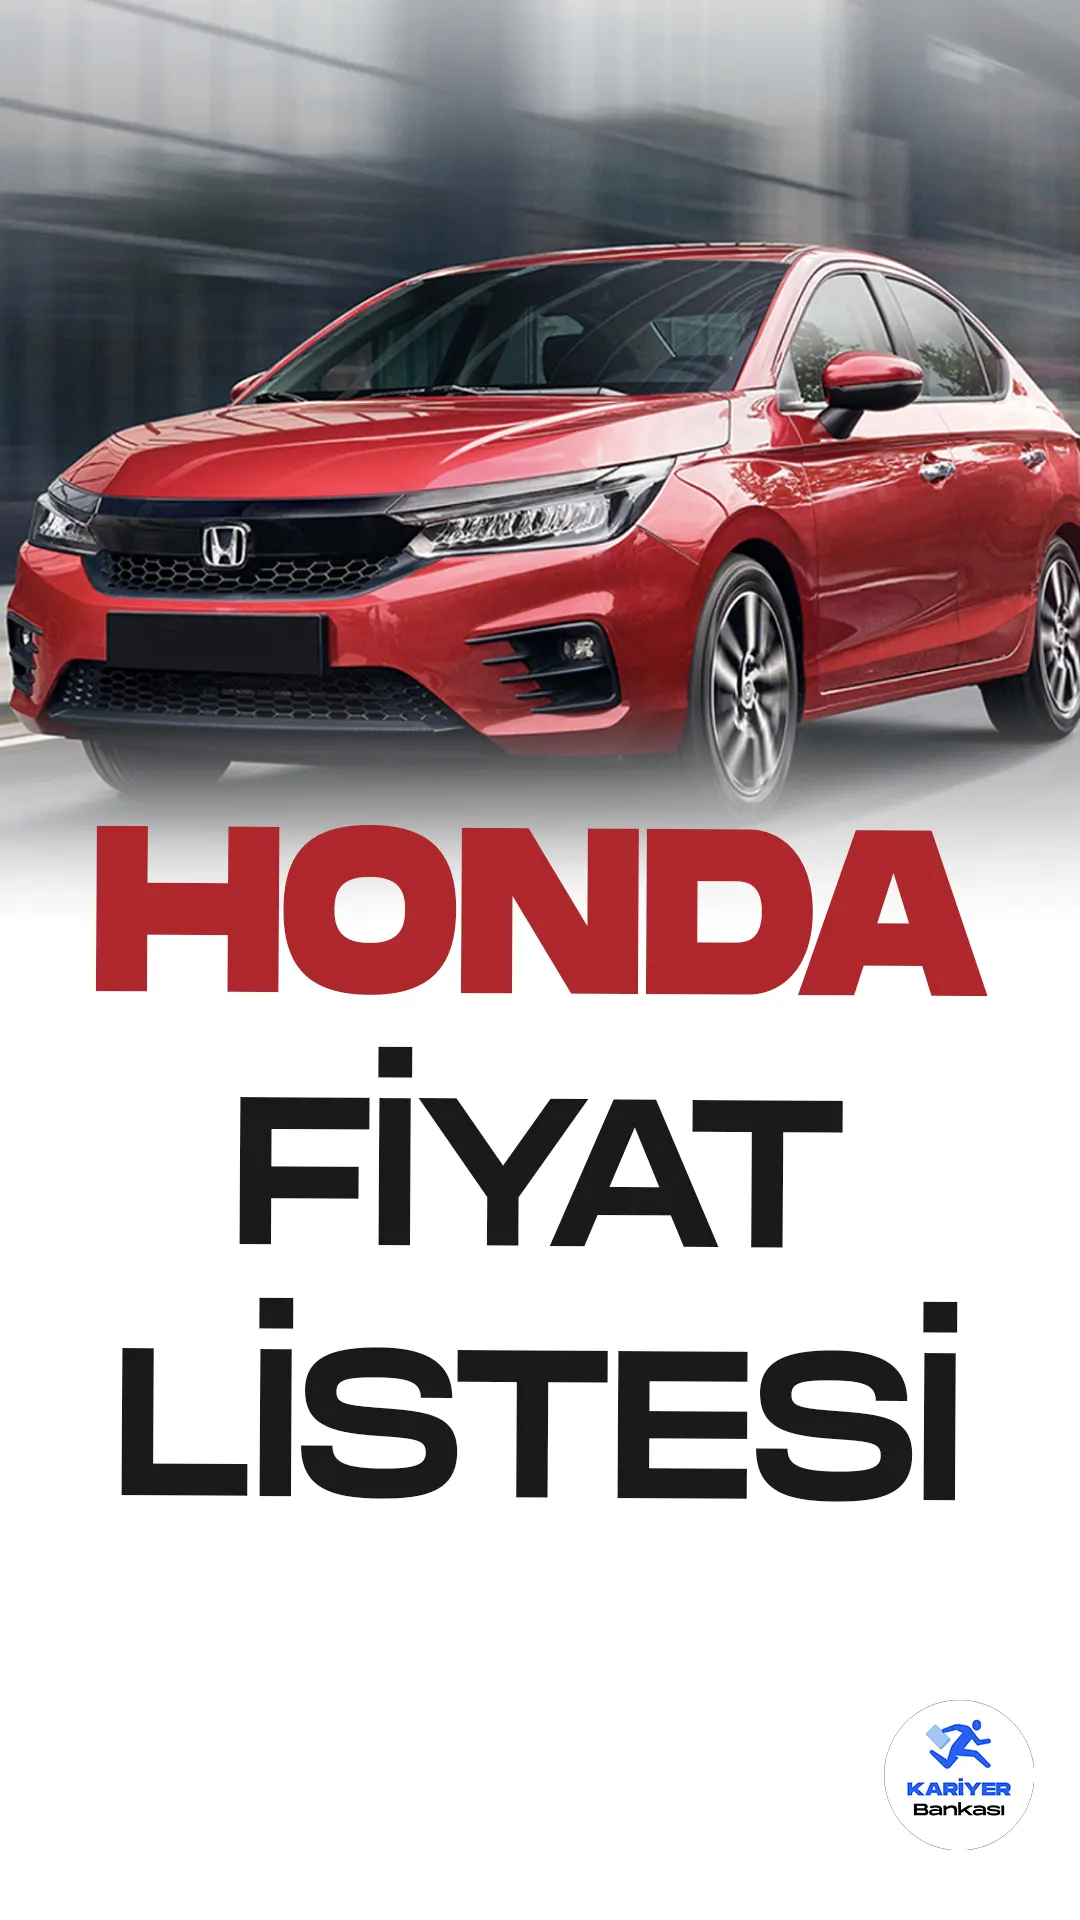 Honda Haziran 2023 Fiyat Listesi Yayımlandı!Honda, popüler otomobil modelleri Jazz, City, Civic, HR-V, Accord ve CR-V ile müşterilerine çeşitlilik sunmaya devam ediyor. Jazz, kompakt boyutu ve şık tasarımıyla şehir içi kullanıma uygun bir seçenek sunuyor. City, modern ve konforlu iç mekanıyla dikkat çekerken, Civic sportif ve dinamik bir tarza sahip. HR-V, crossover segmentinde iddialı bir model olarak öne çıkarken, Accord lüks ve geniş iç mekanıyla şıklığı yakalamayı hedefliyor. CR-V, SUV segmentinde güçlü motor seçenekleri ve geniş bagaj hacmiyle ailelerin tercihleri arasında yer alıyor. Honda'nın bu modelleri, kaliteli yapısı ve güvenilirliğiyle otomobil severlerin beğenisini kazanmaya devam ediyor.